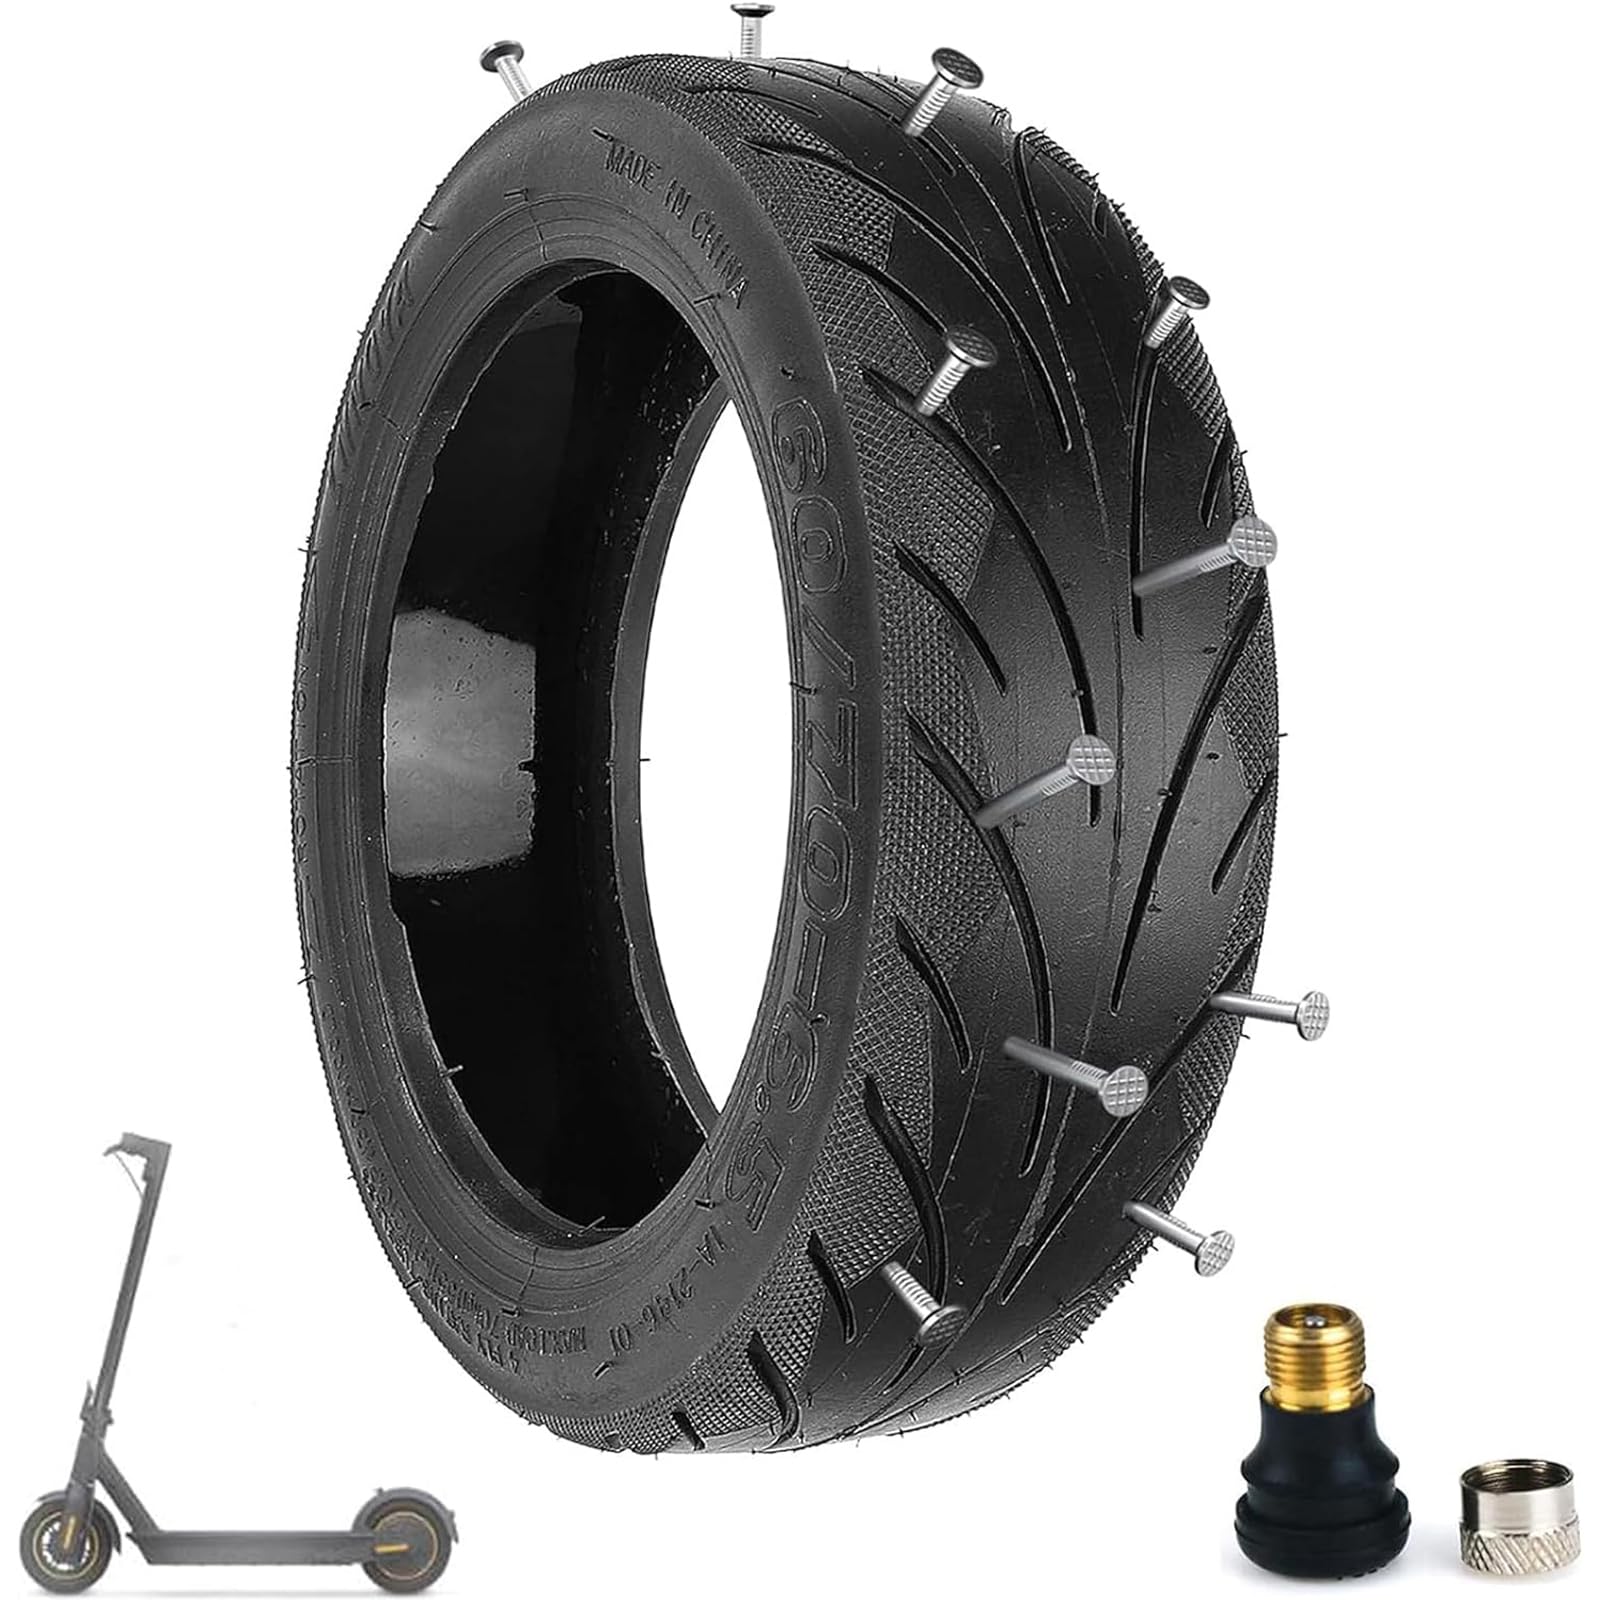 Tmom Max G30 Reifen 60/70-6.5 Tubeless Reifen Explosionsgeschützte Scooter-Reifen für Segway Ninebot Max G30/ Max G30D Roller Selbstreparierender Reifen Verschleißfeste Ersatzreifen (1pcs) von HYGJ